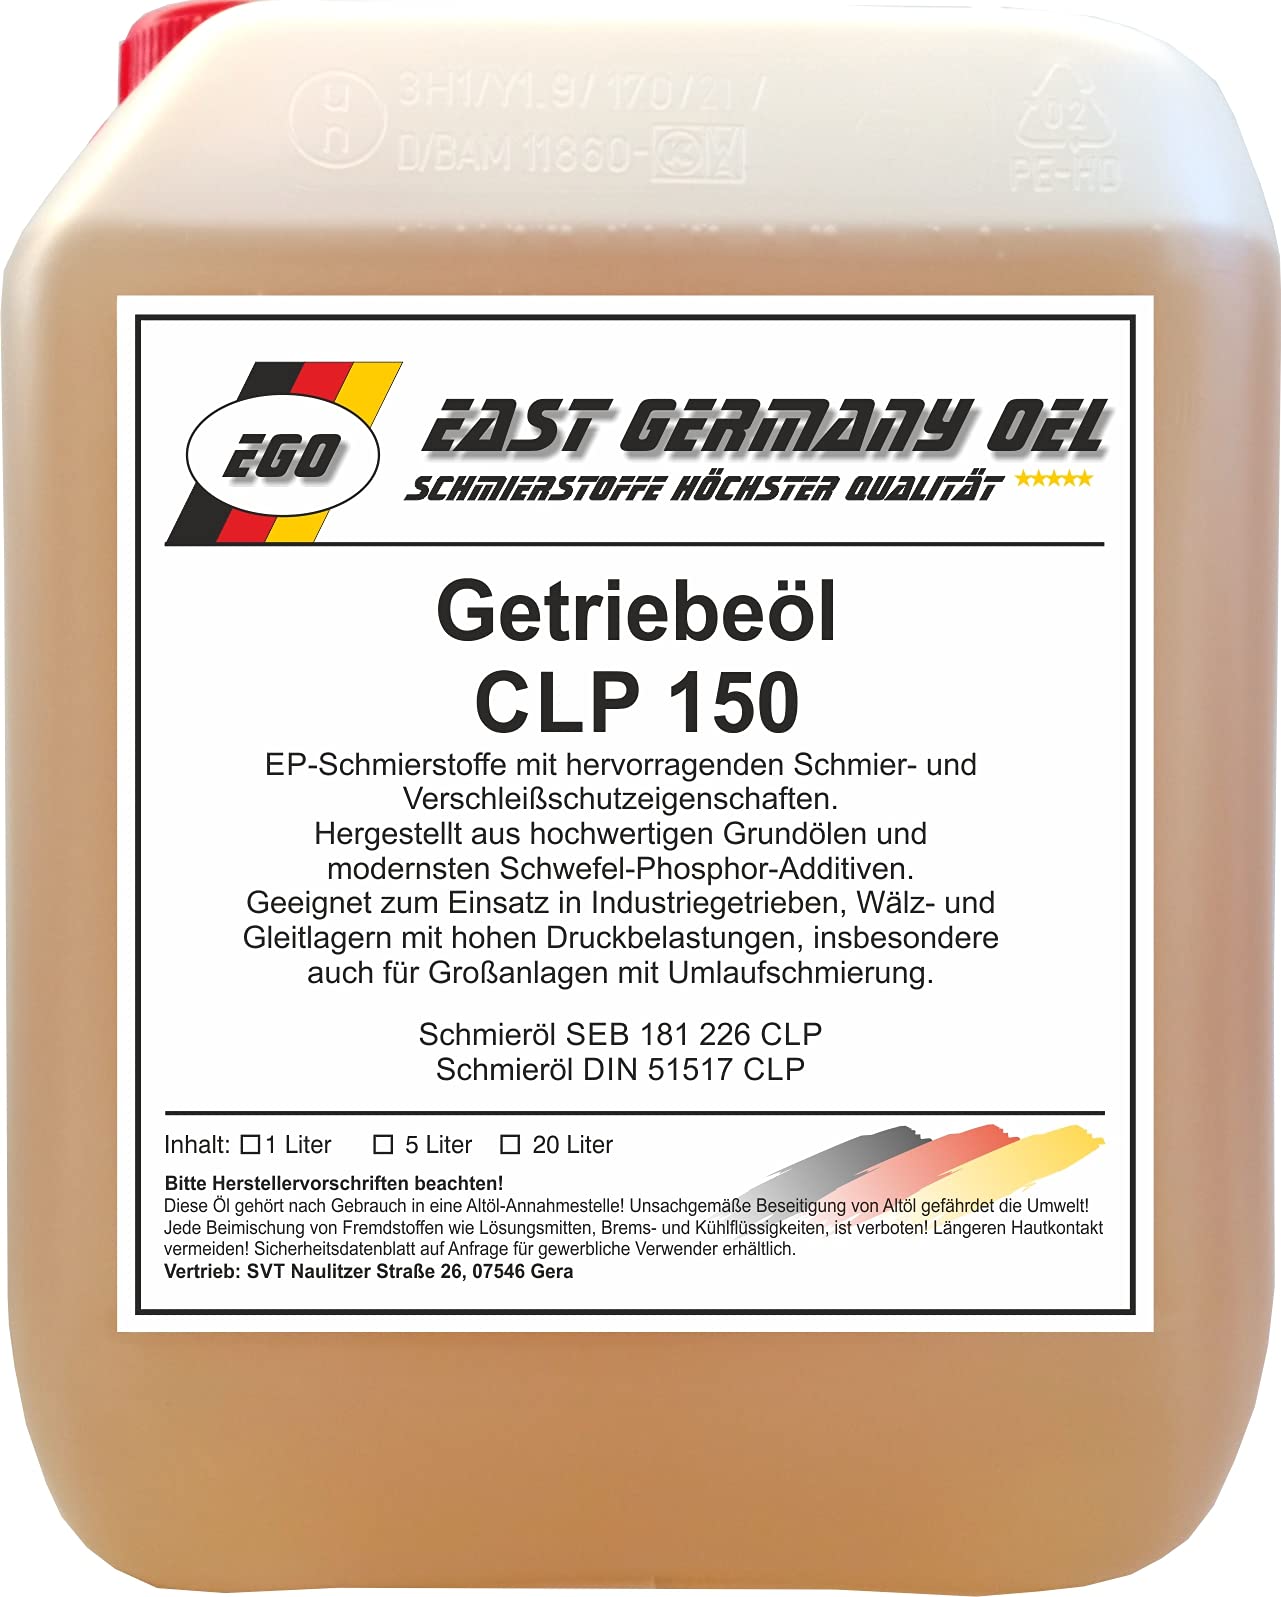 Getriebeöl CLP 150 Kanister 5 Liter von East Germany OIL